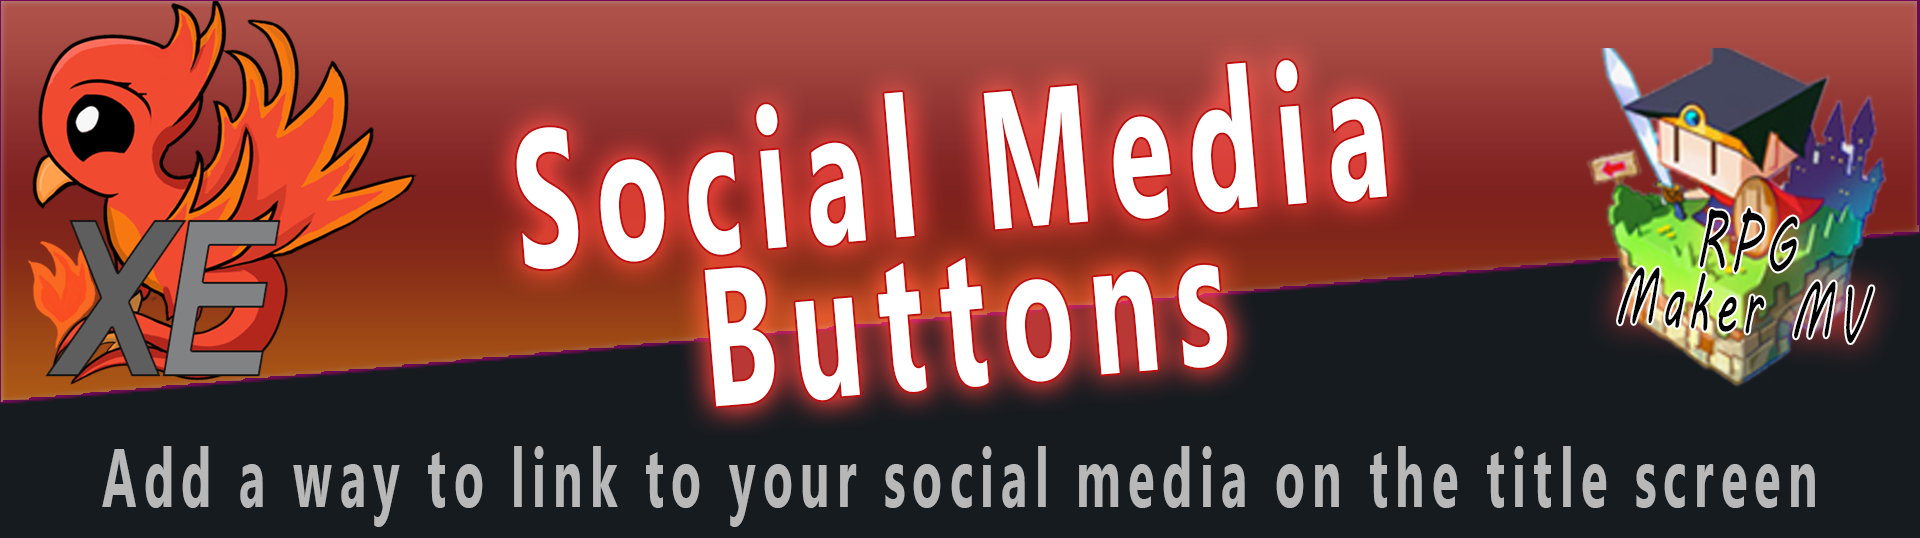 Social Media Buttons X for RPG Maker MV